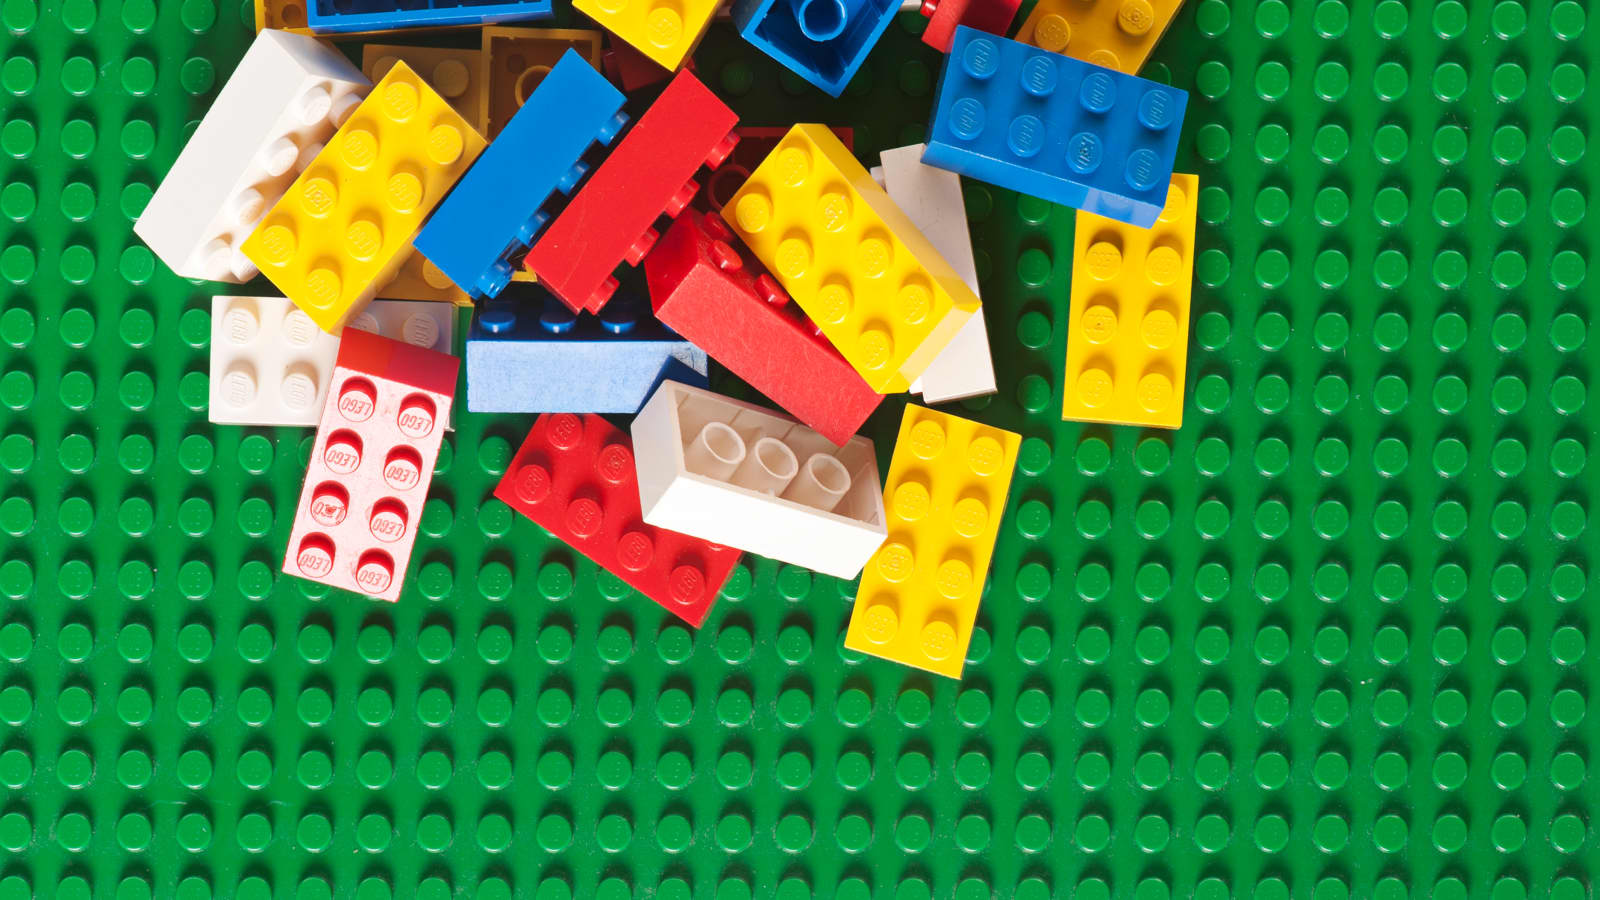 dialog terrorisme Følg os Lego plans to scrap plastic bags and make more 'bio bricks'